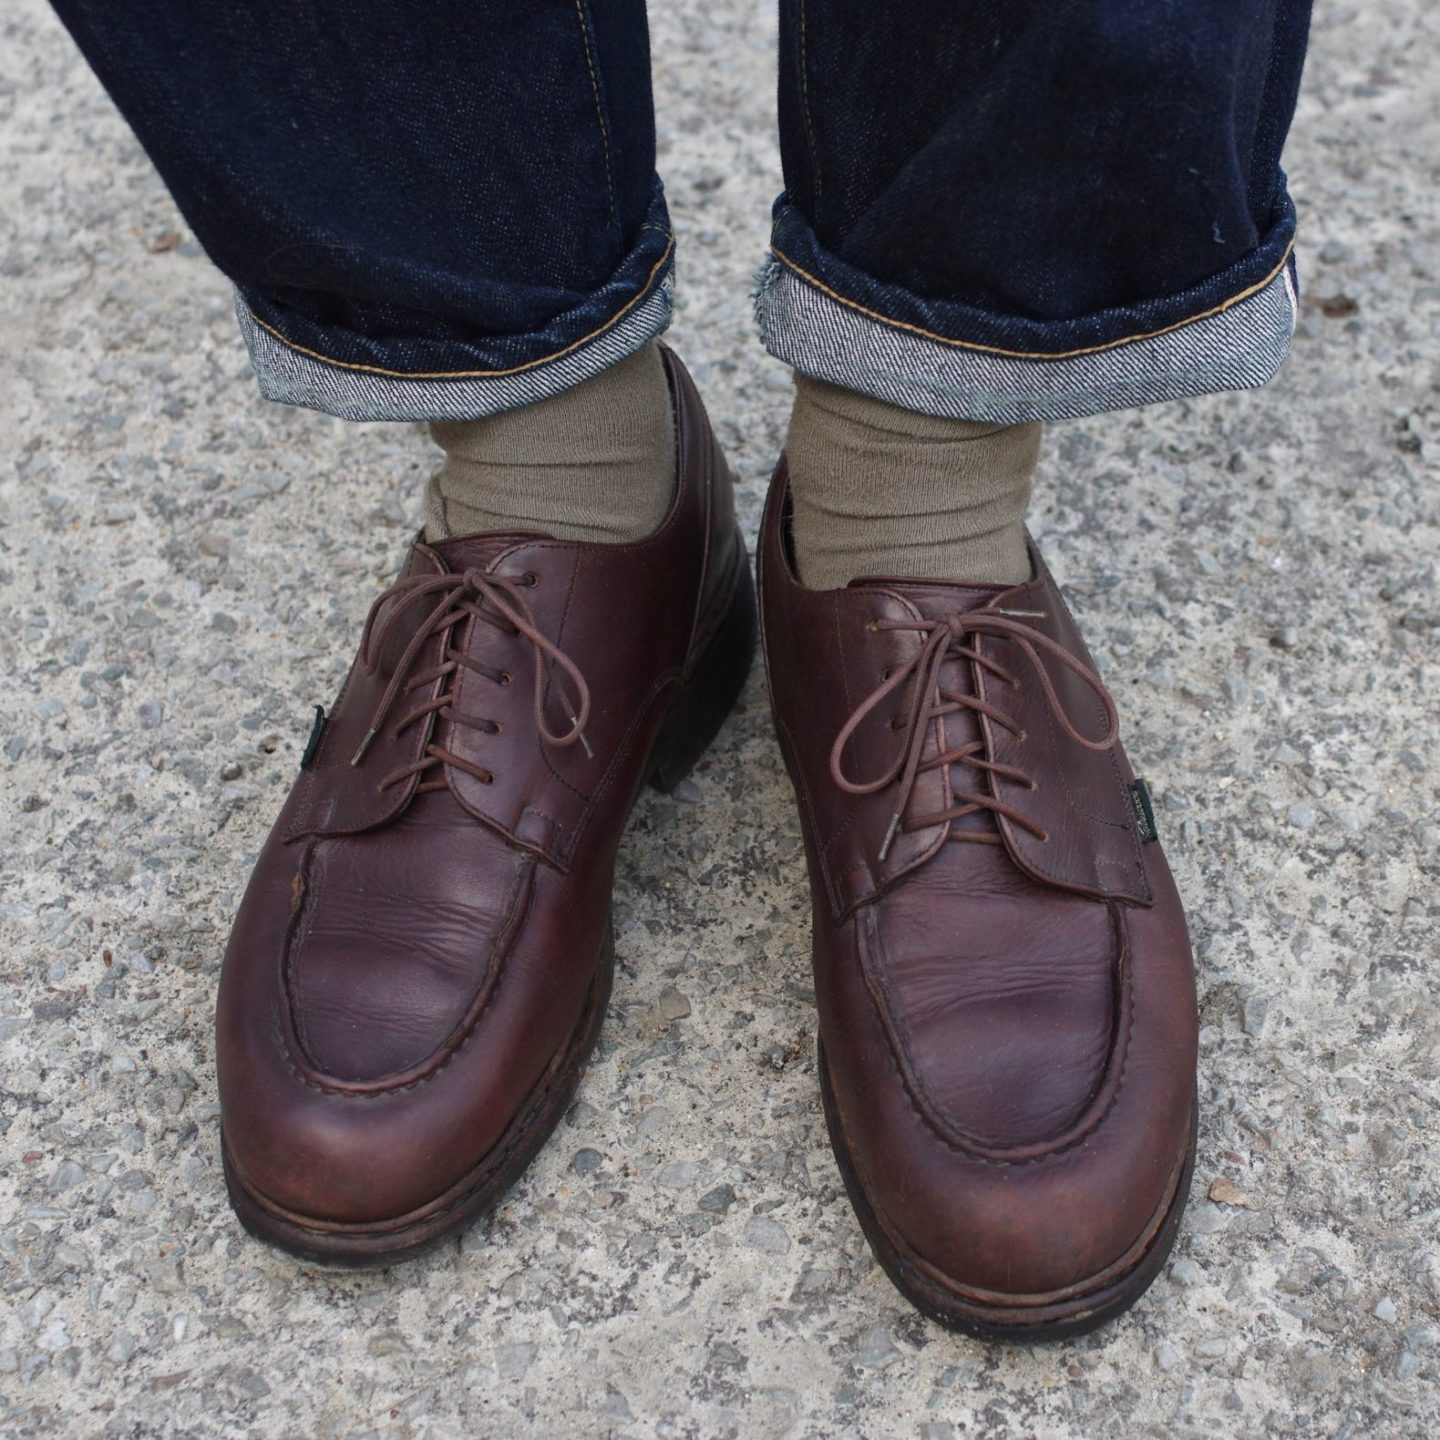 paire de chaussures en cuir marron made in france de la marque Paraboot modèle chambord